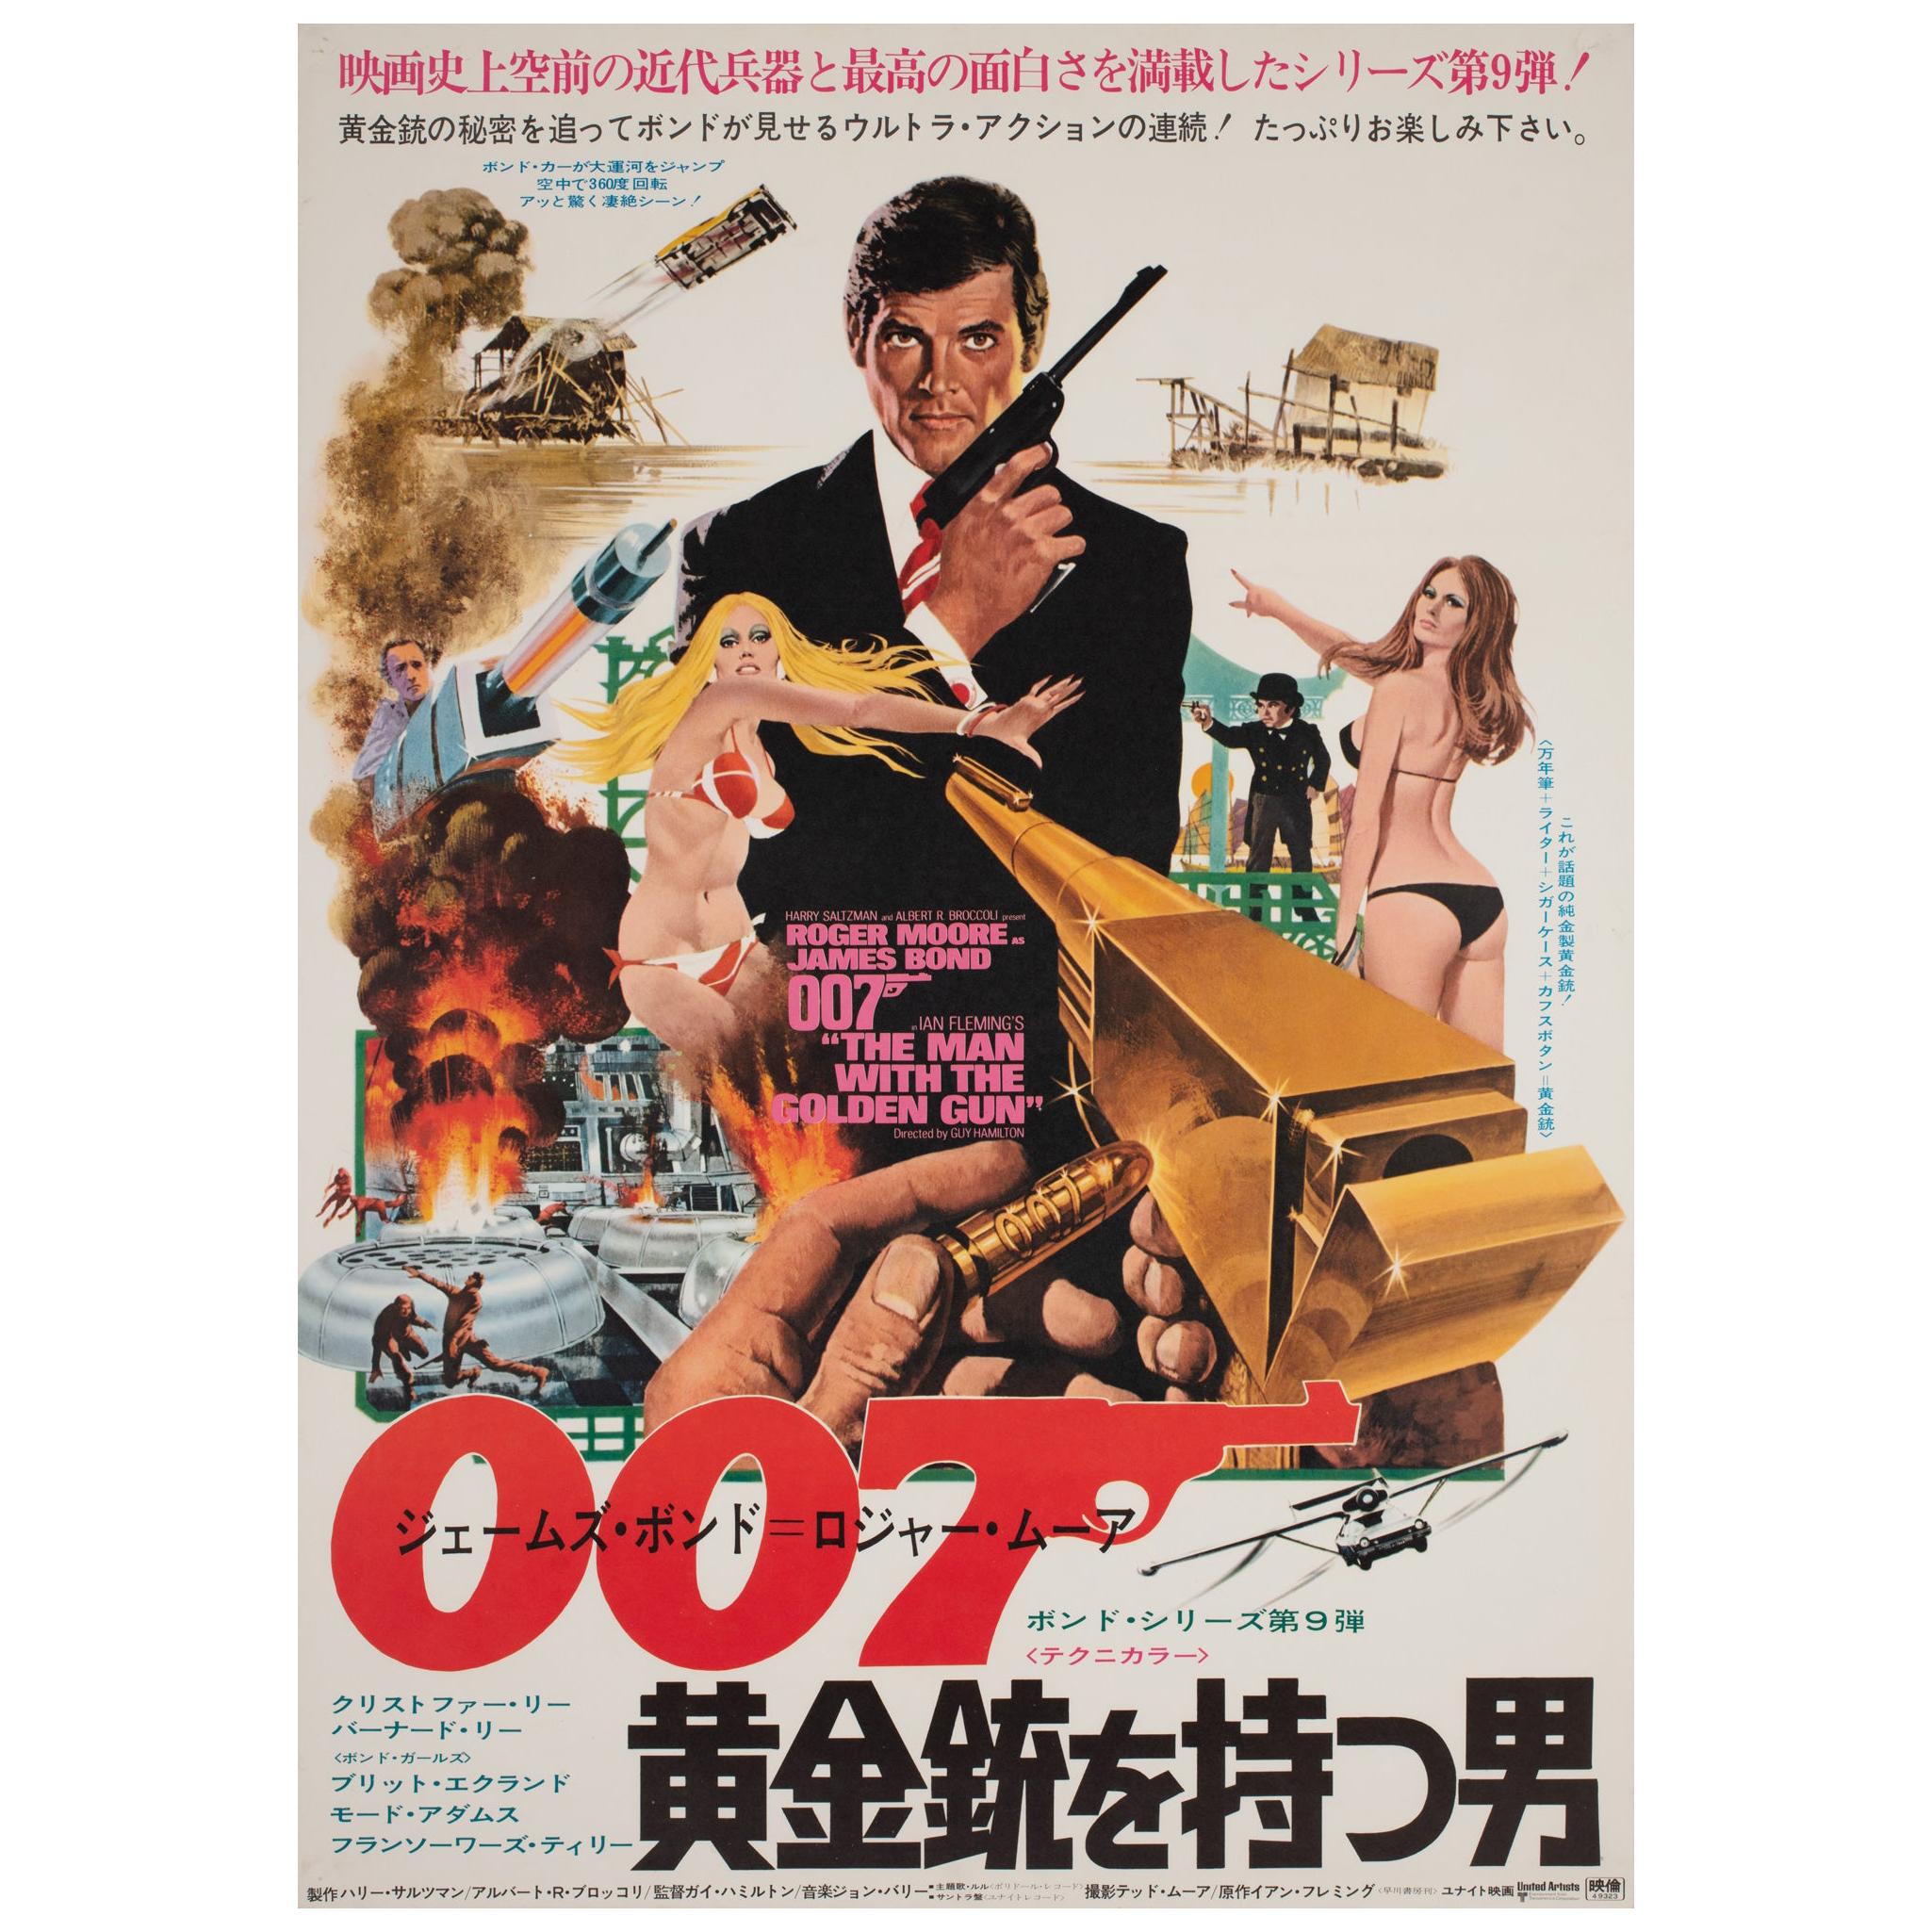 Affiche japonaise du film « The Man with the Golden Gun » (L'homme au pistolet d'or), 1973, McGinnis